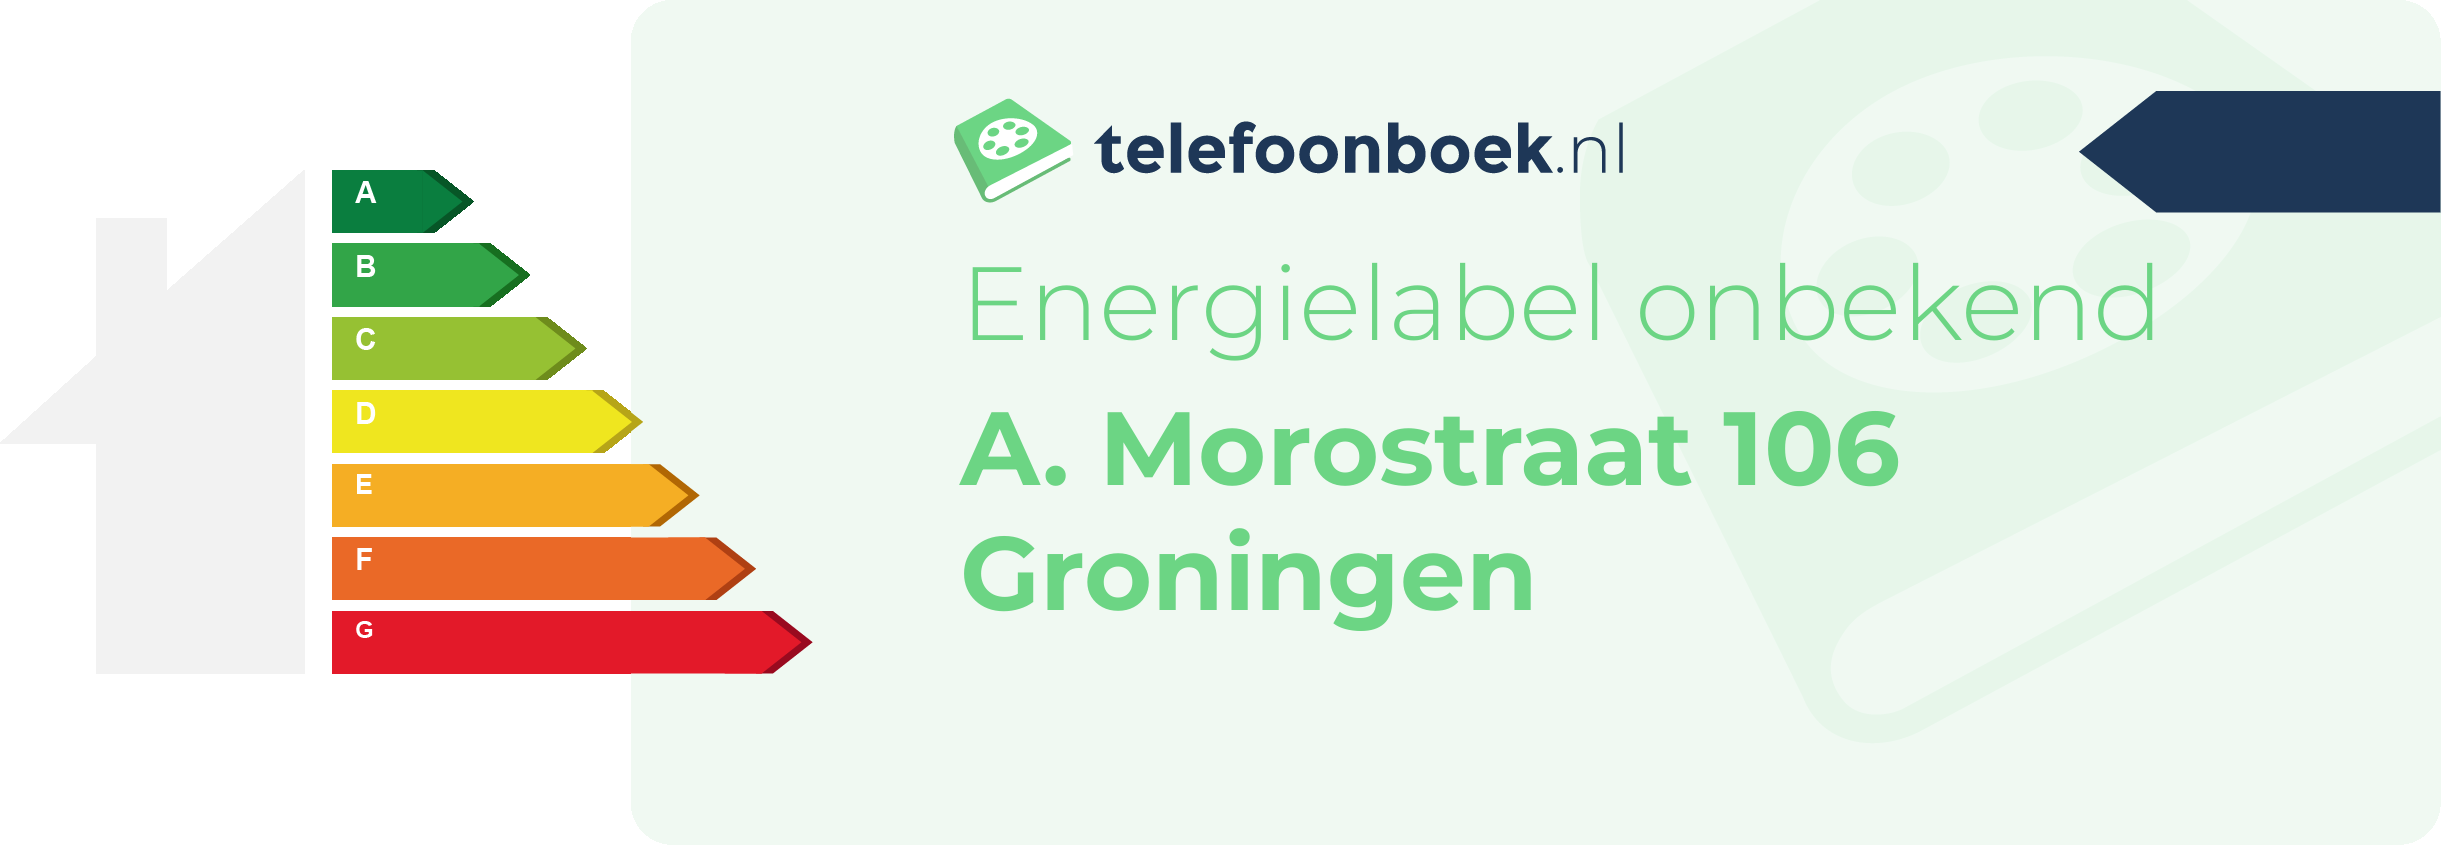 Energielabel A. Morostraat 106 Groningen